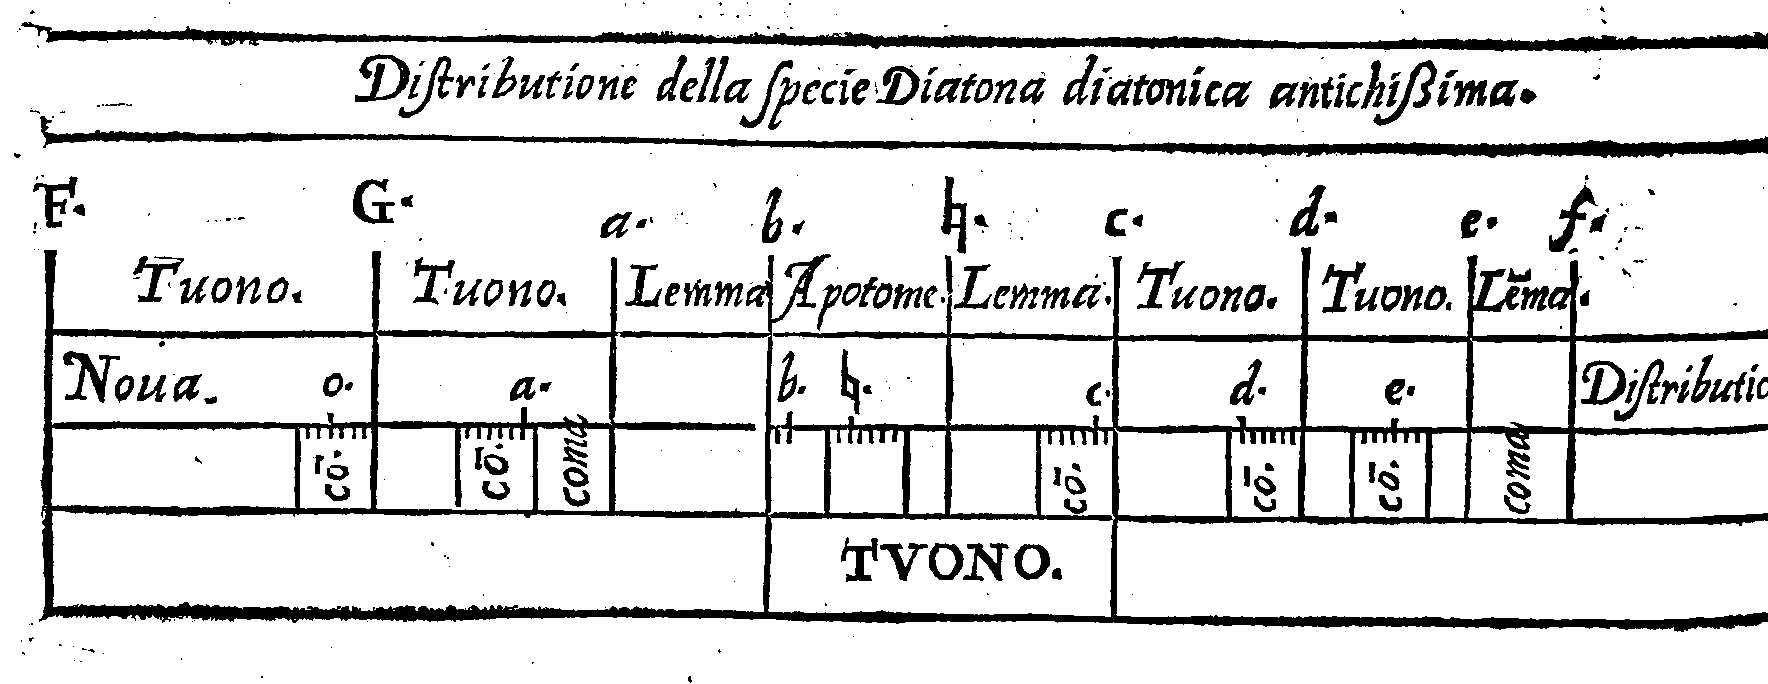 Distributione della specie Diatona diatonica antichissima.
F. G. a. b. . c. d. e. f.
Tuono. Tuono. Lemma Apotome. Lemma. Tuono. Tuono. Lma.
Noua. o. a. b. . c. d. e. Distributio
c.
c.
coma
c.
c.
c.
coma
TVONO.